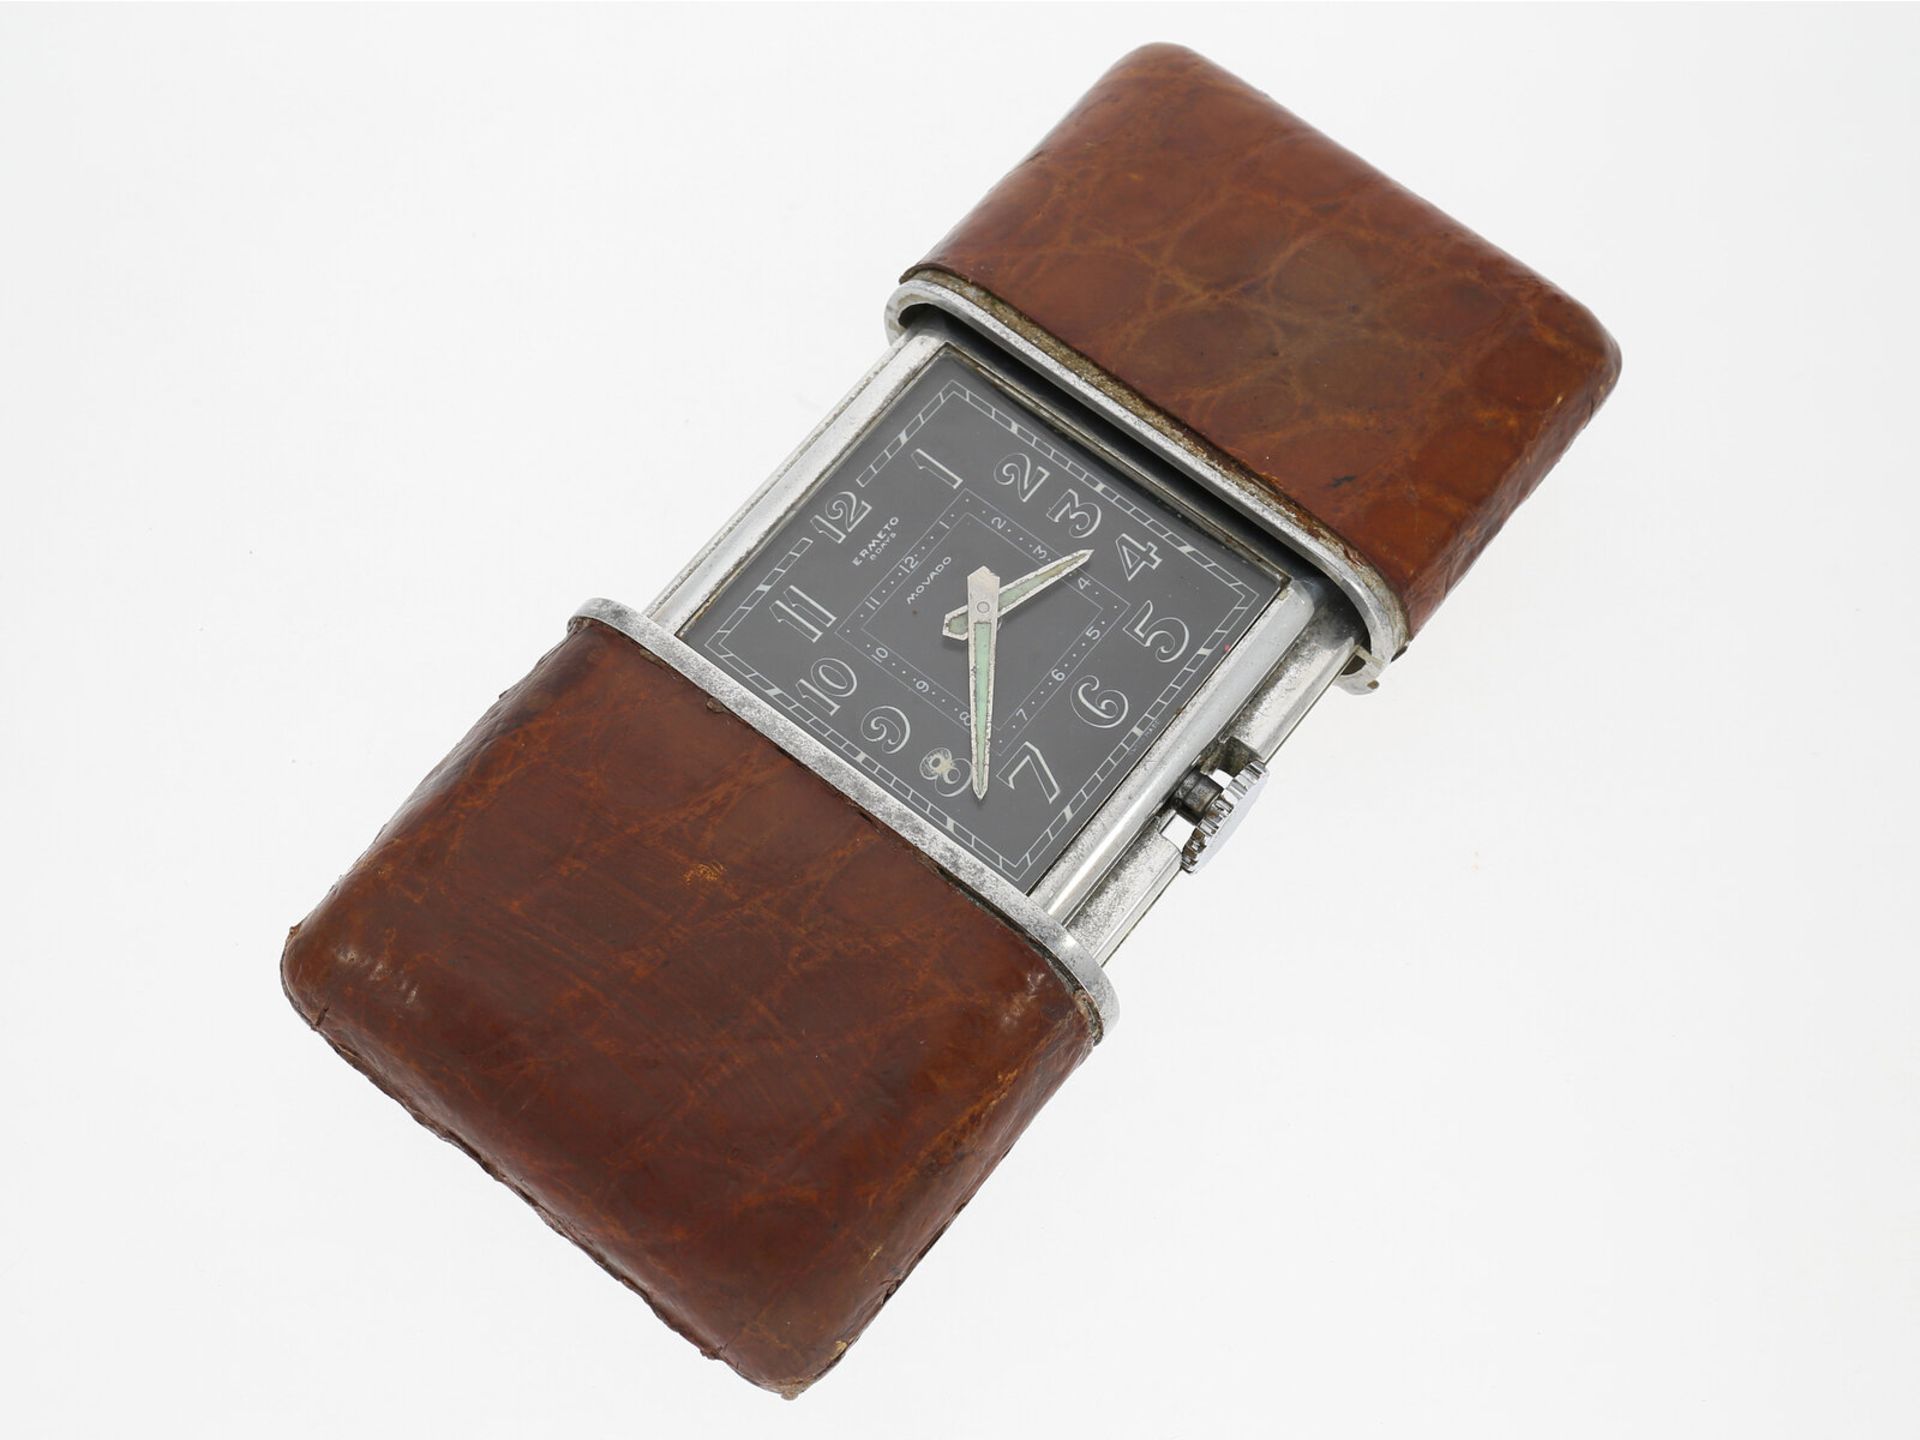 Reisewecker: seltene vintage Reiseuhr mit 8-Tage-Werk, Chronometer Ermeto Jumbo, Movado, um 1930 - Bild 2 aus 4